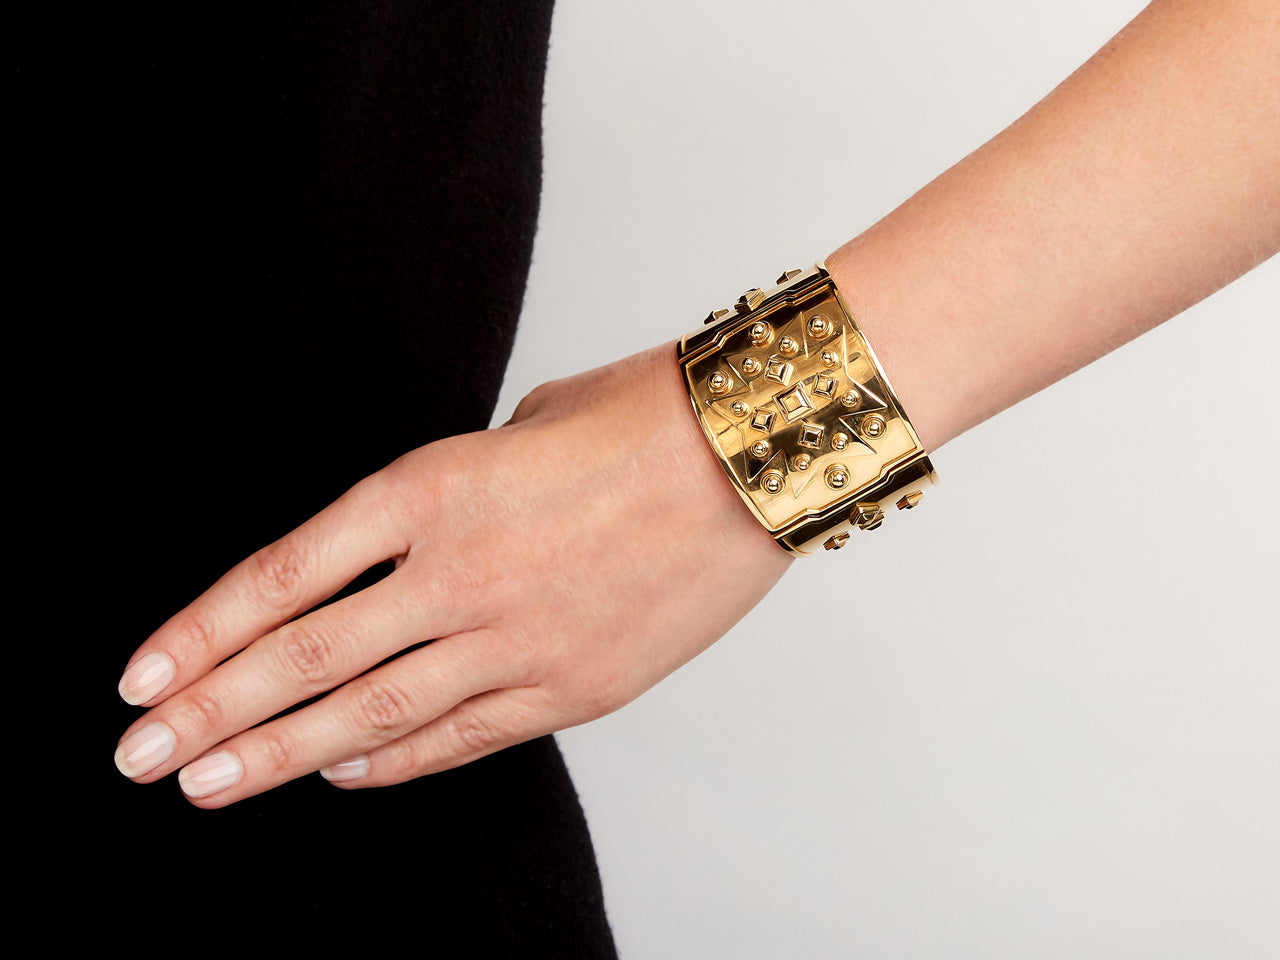 Louis Vuitton Lock Me Manchette Bracelet - Gold-Tone Metal Bangle